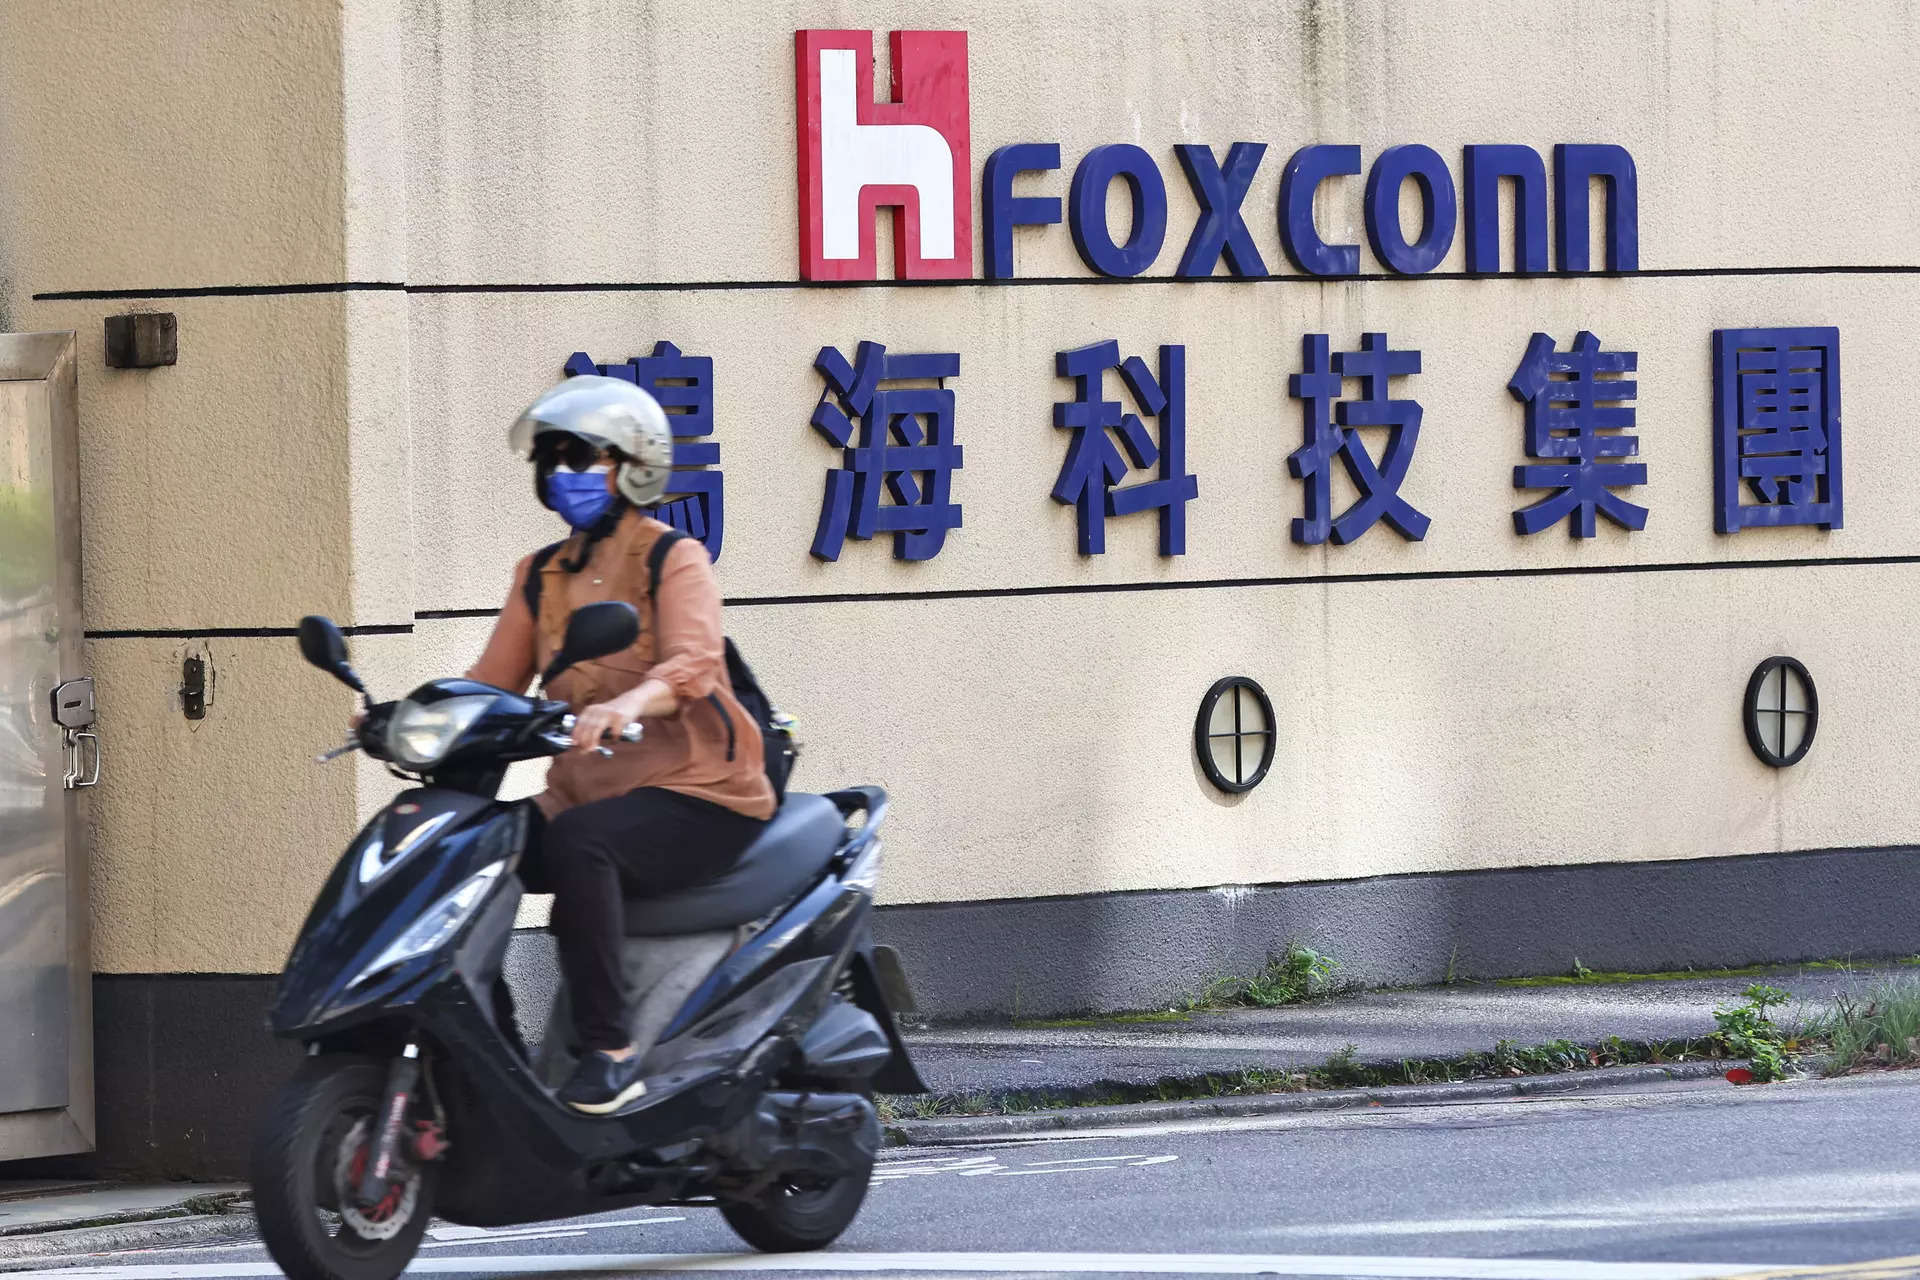 Foxconn subsidiary